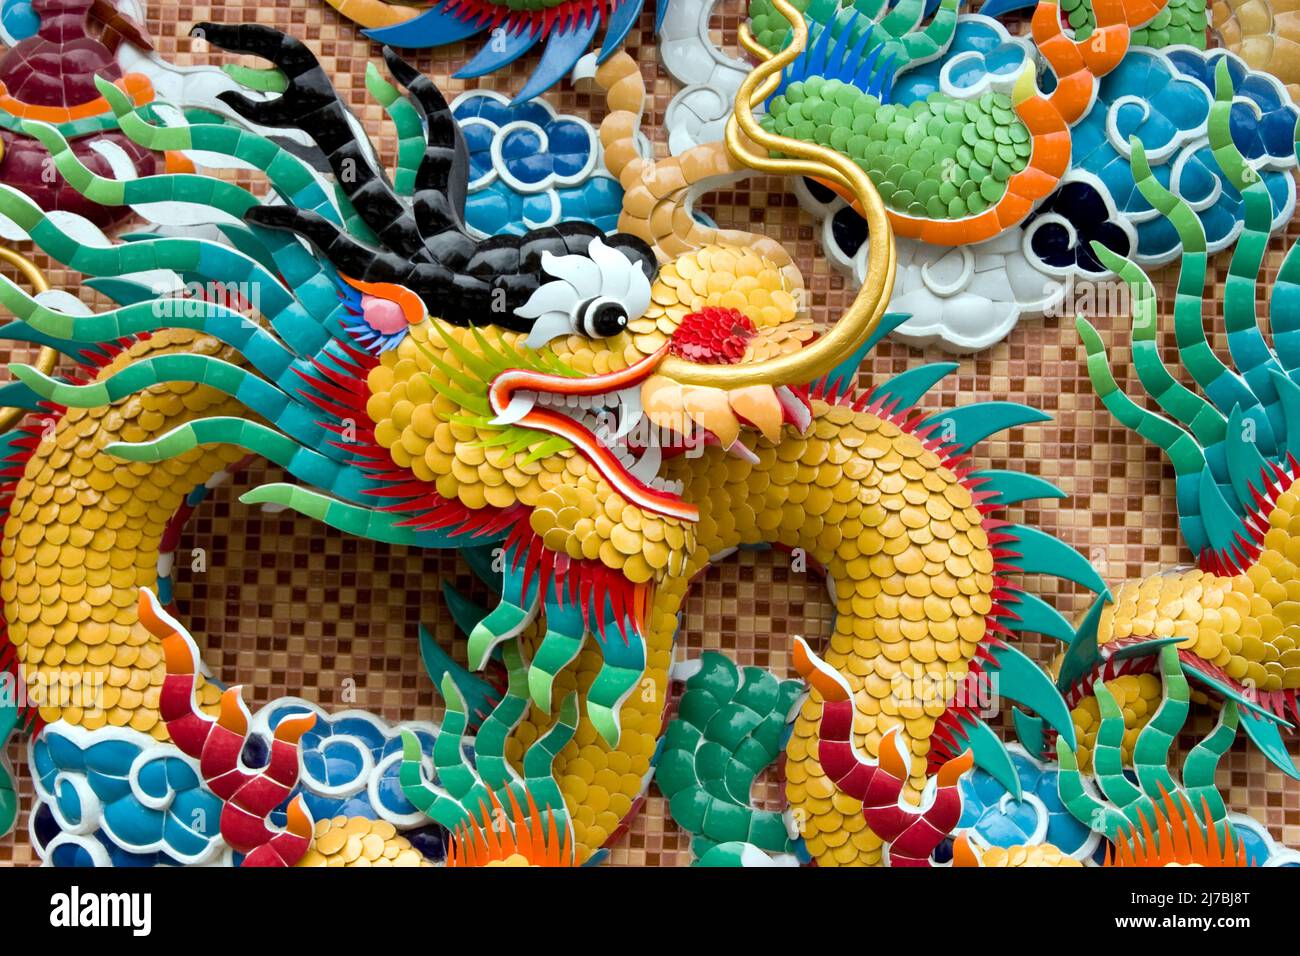 Il drago cinese è una creatura mitica cinese, raffigurata come una creatura  lunga, scalata, simile a serpente con quattro artigli. Molte immagini dei  draghi orientali mostrano una perla fiammeggiante sotto il loro